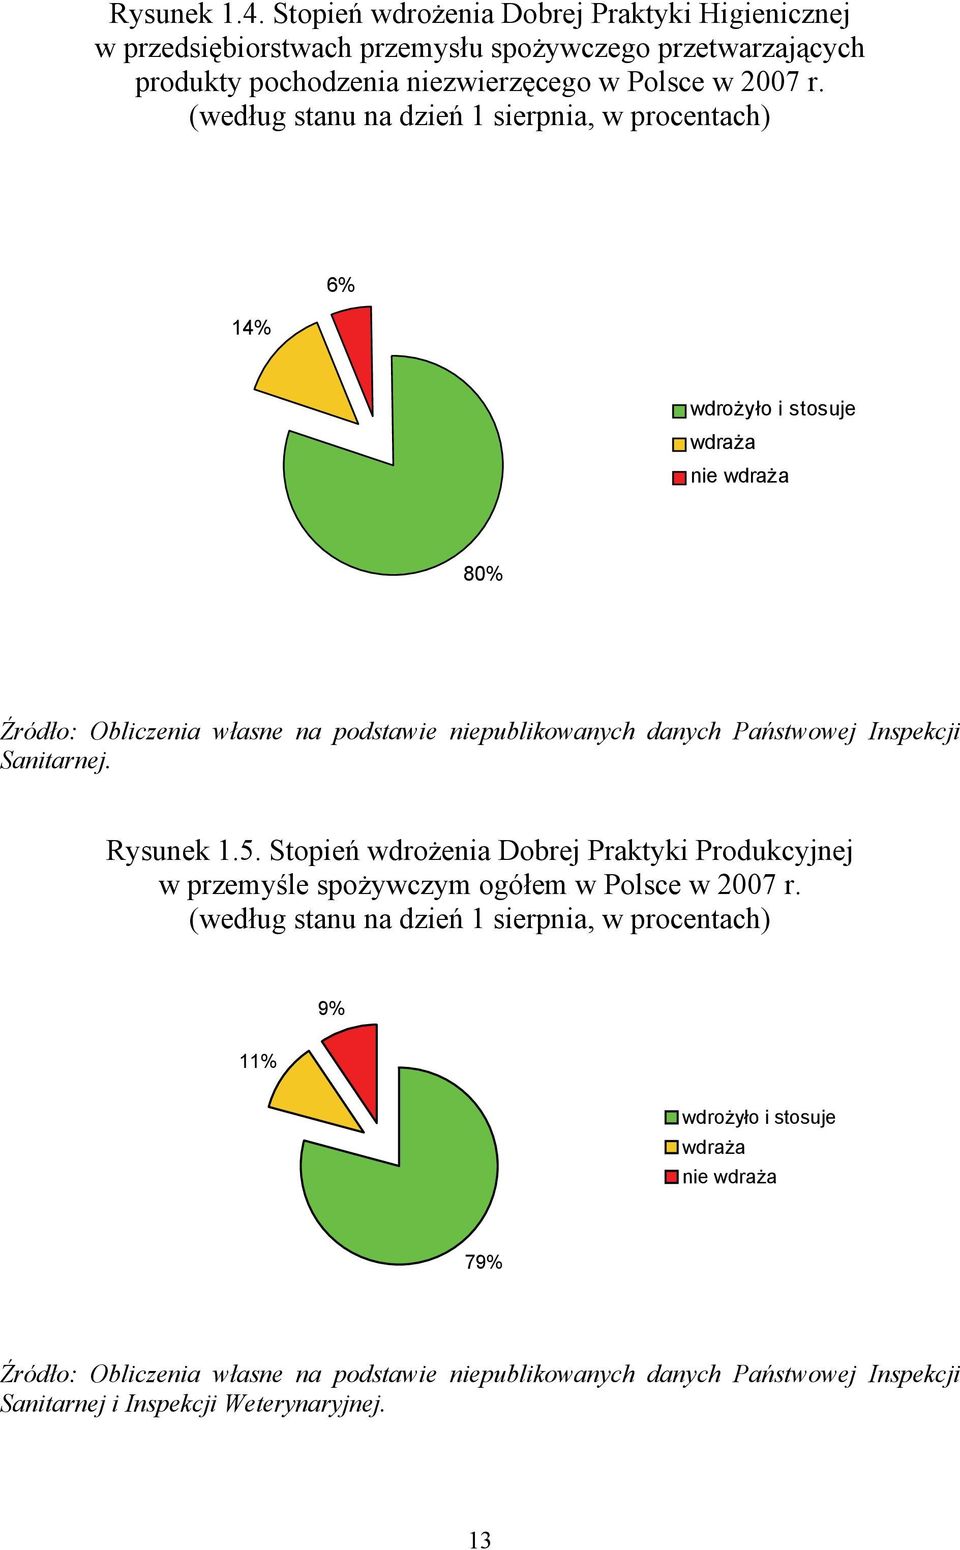 Inspekcji Sanitarnej. Rysunek 1.5. Stopień wdrożenia Dobrej Praktyki Produkcyjnej w przemyśle spożywczym ogółem w Polsce w 2007 r.